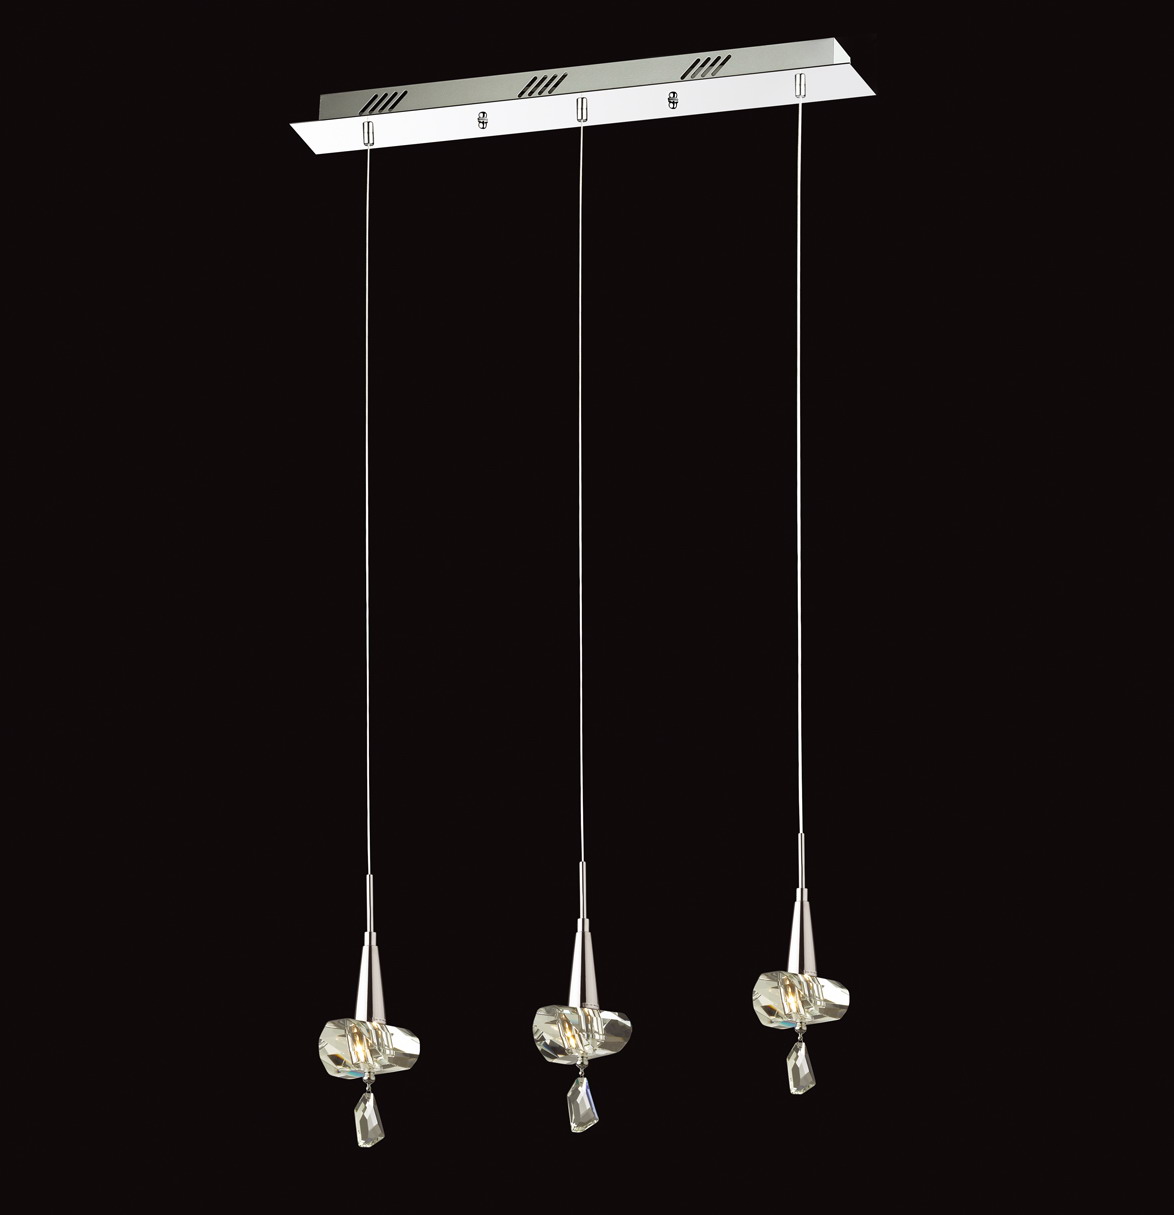 Leggiere design decorative modern interior pendant lights (P8101-5L ) 